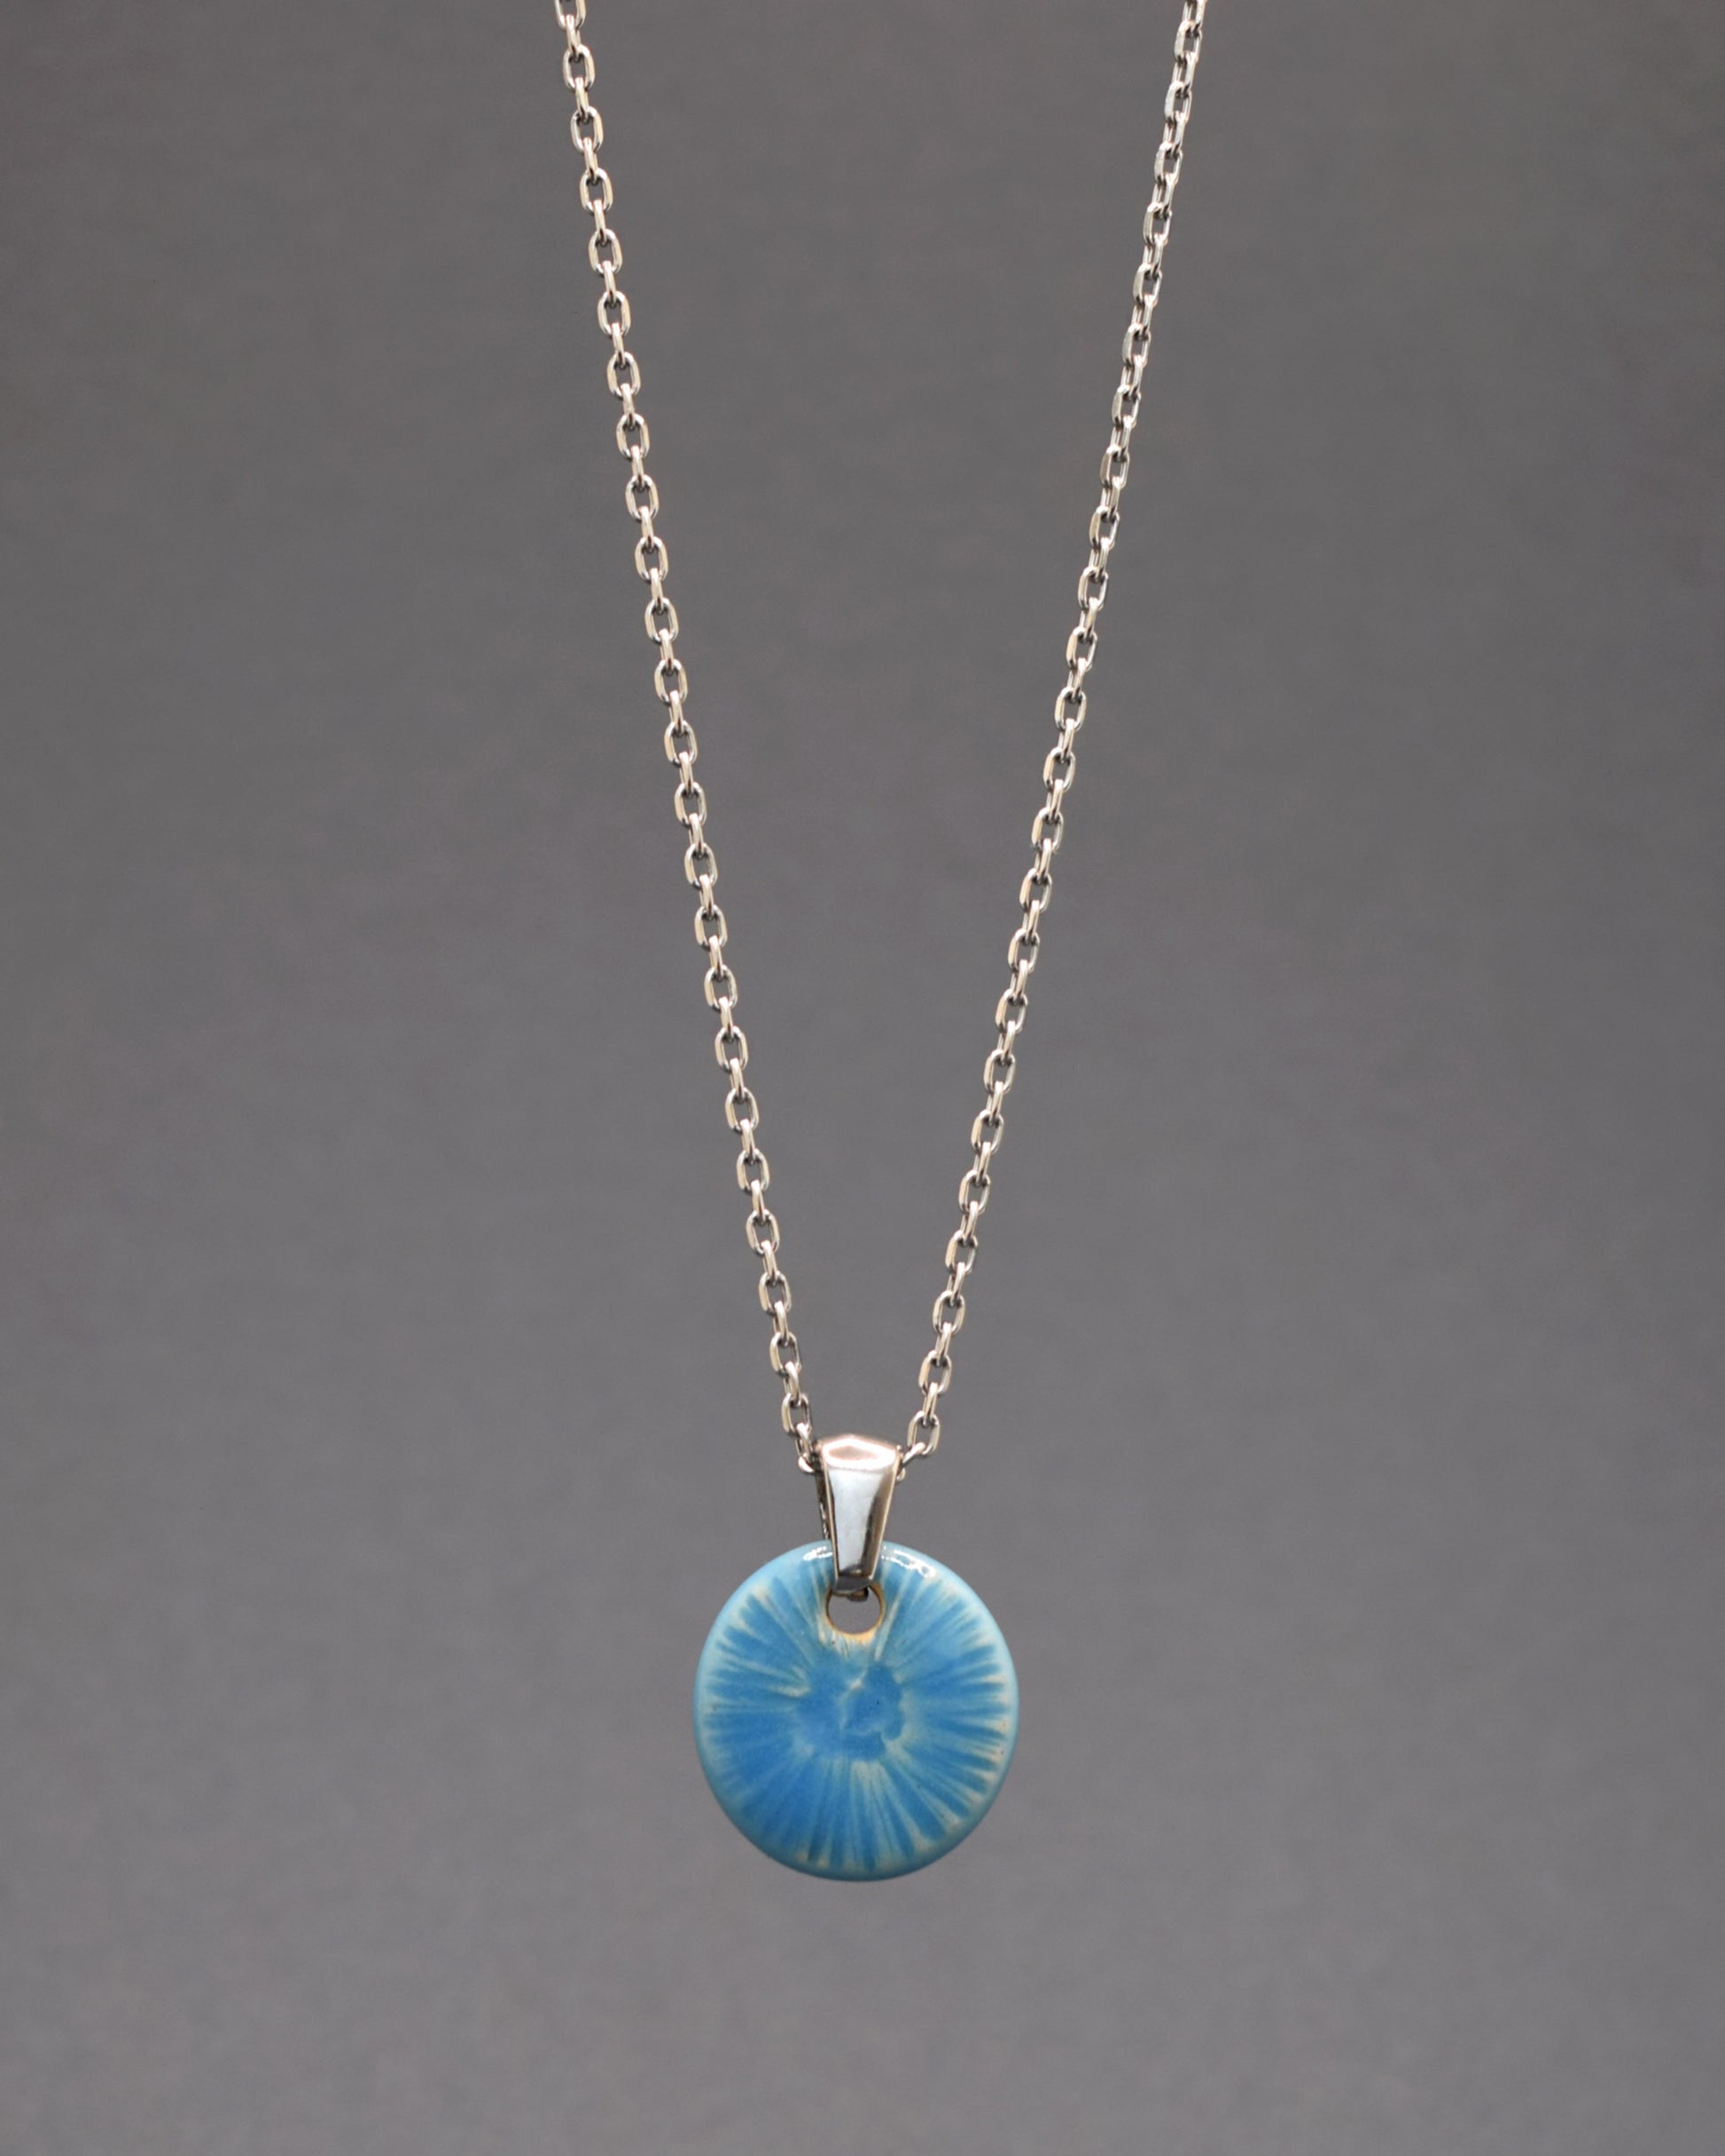 Colar envolvente em aço inoxidável, com um delicado pendente azul celeste inspirado na graciosidade de uma flor do mar. Uma peça única que adiciona um toque distintivo e encantador ao seu estilo.